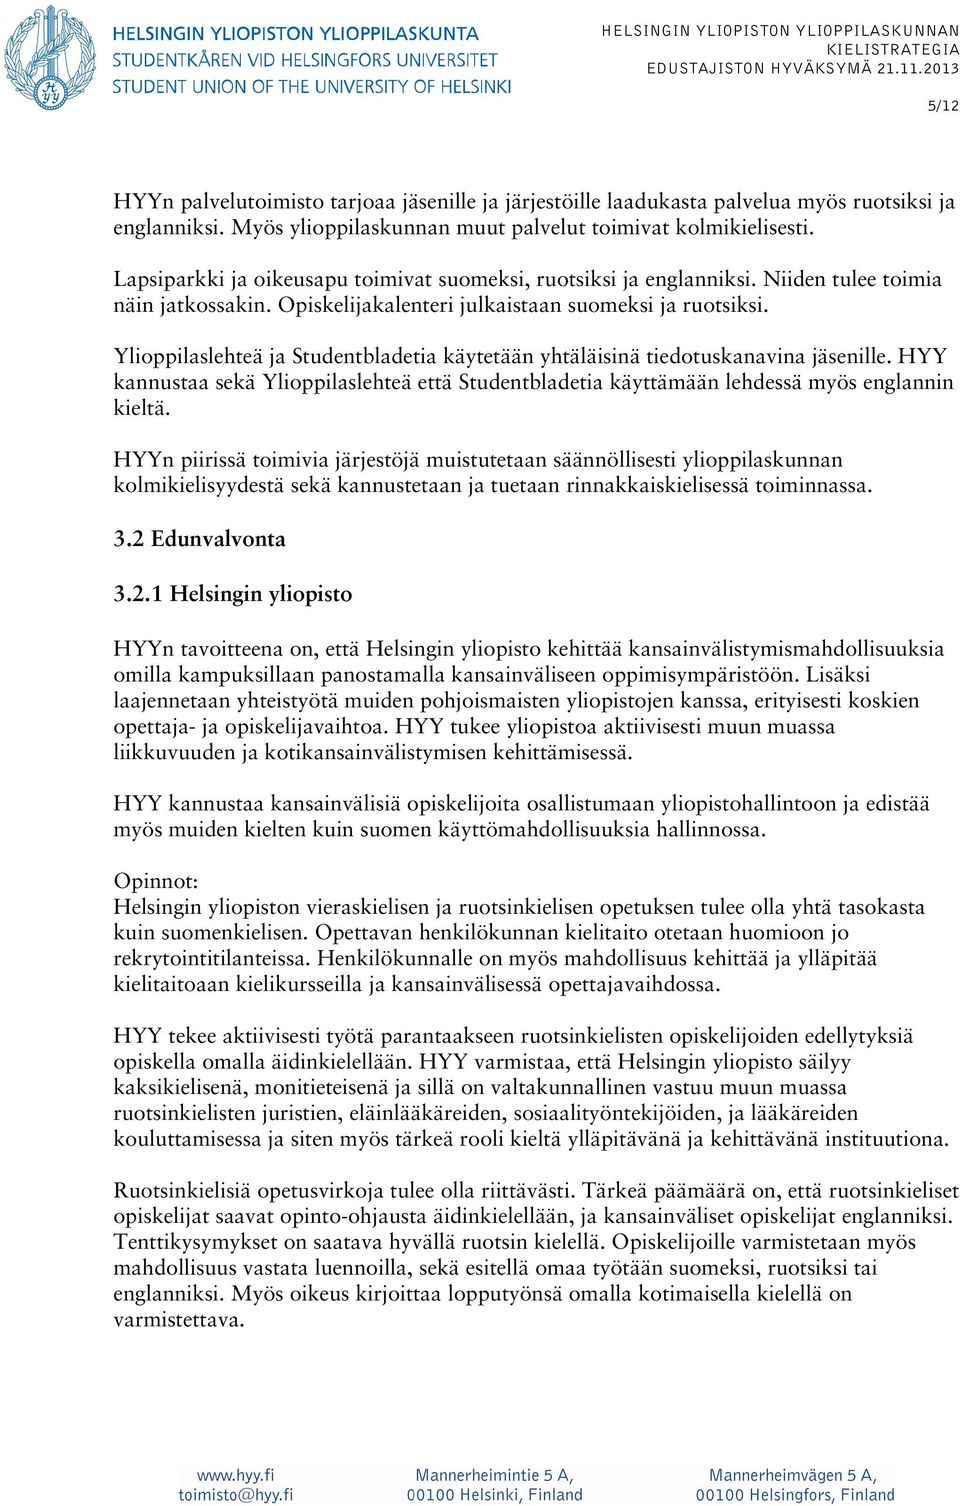 Ylioppilaslehteä ja Studentbladetia käytetään yhtäläisinä tiedotuskanavina jäsenille. HYY kannustaa sekä Ylioppilaslehteä että Studentbladetia käyttämään lehdessä myös englannin kieltä.